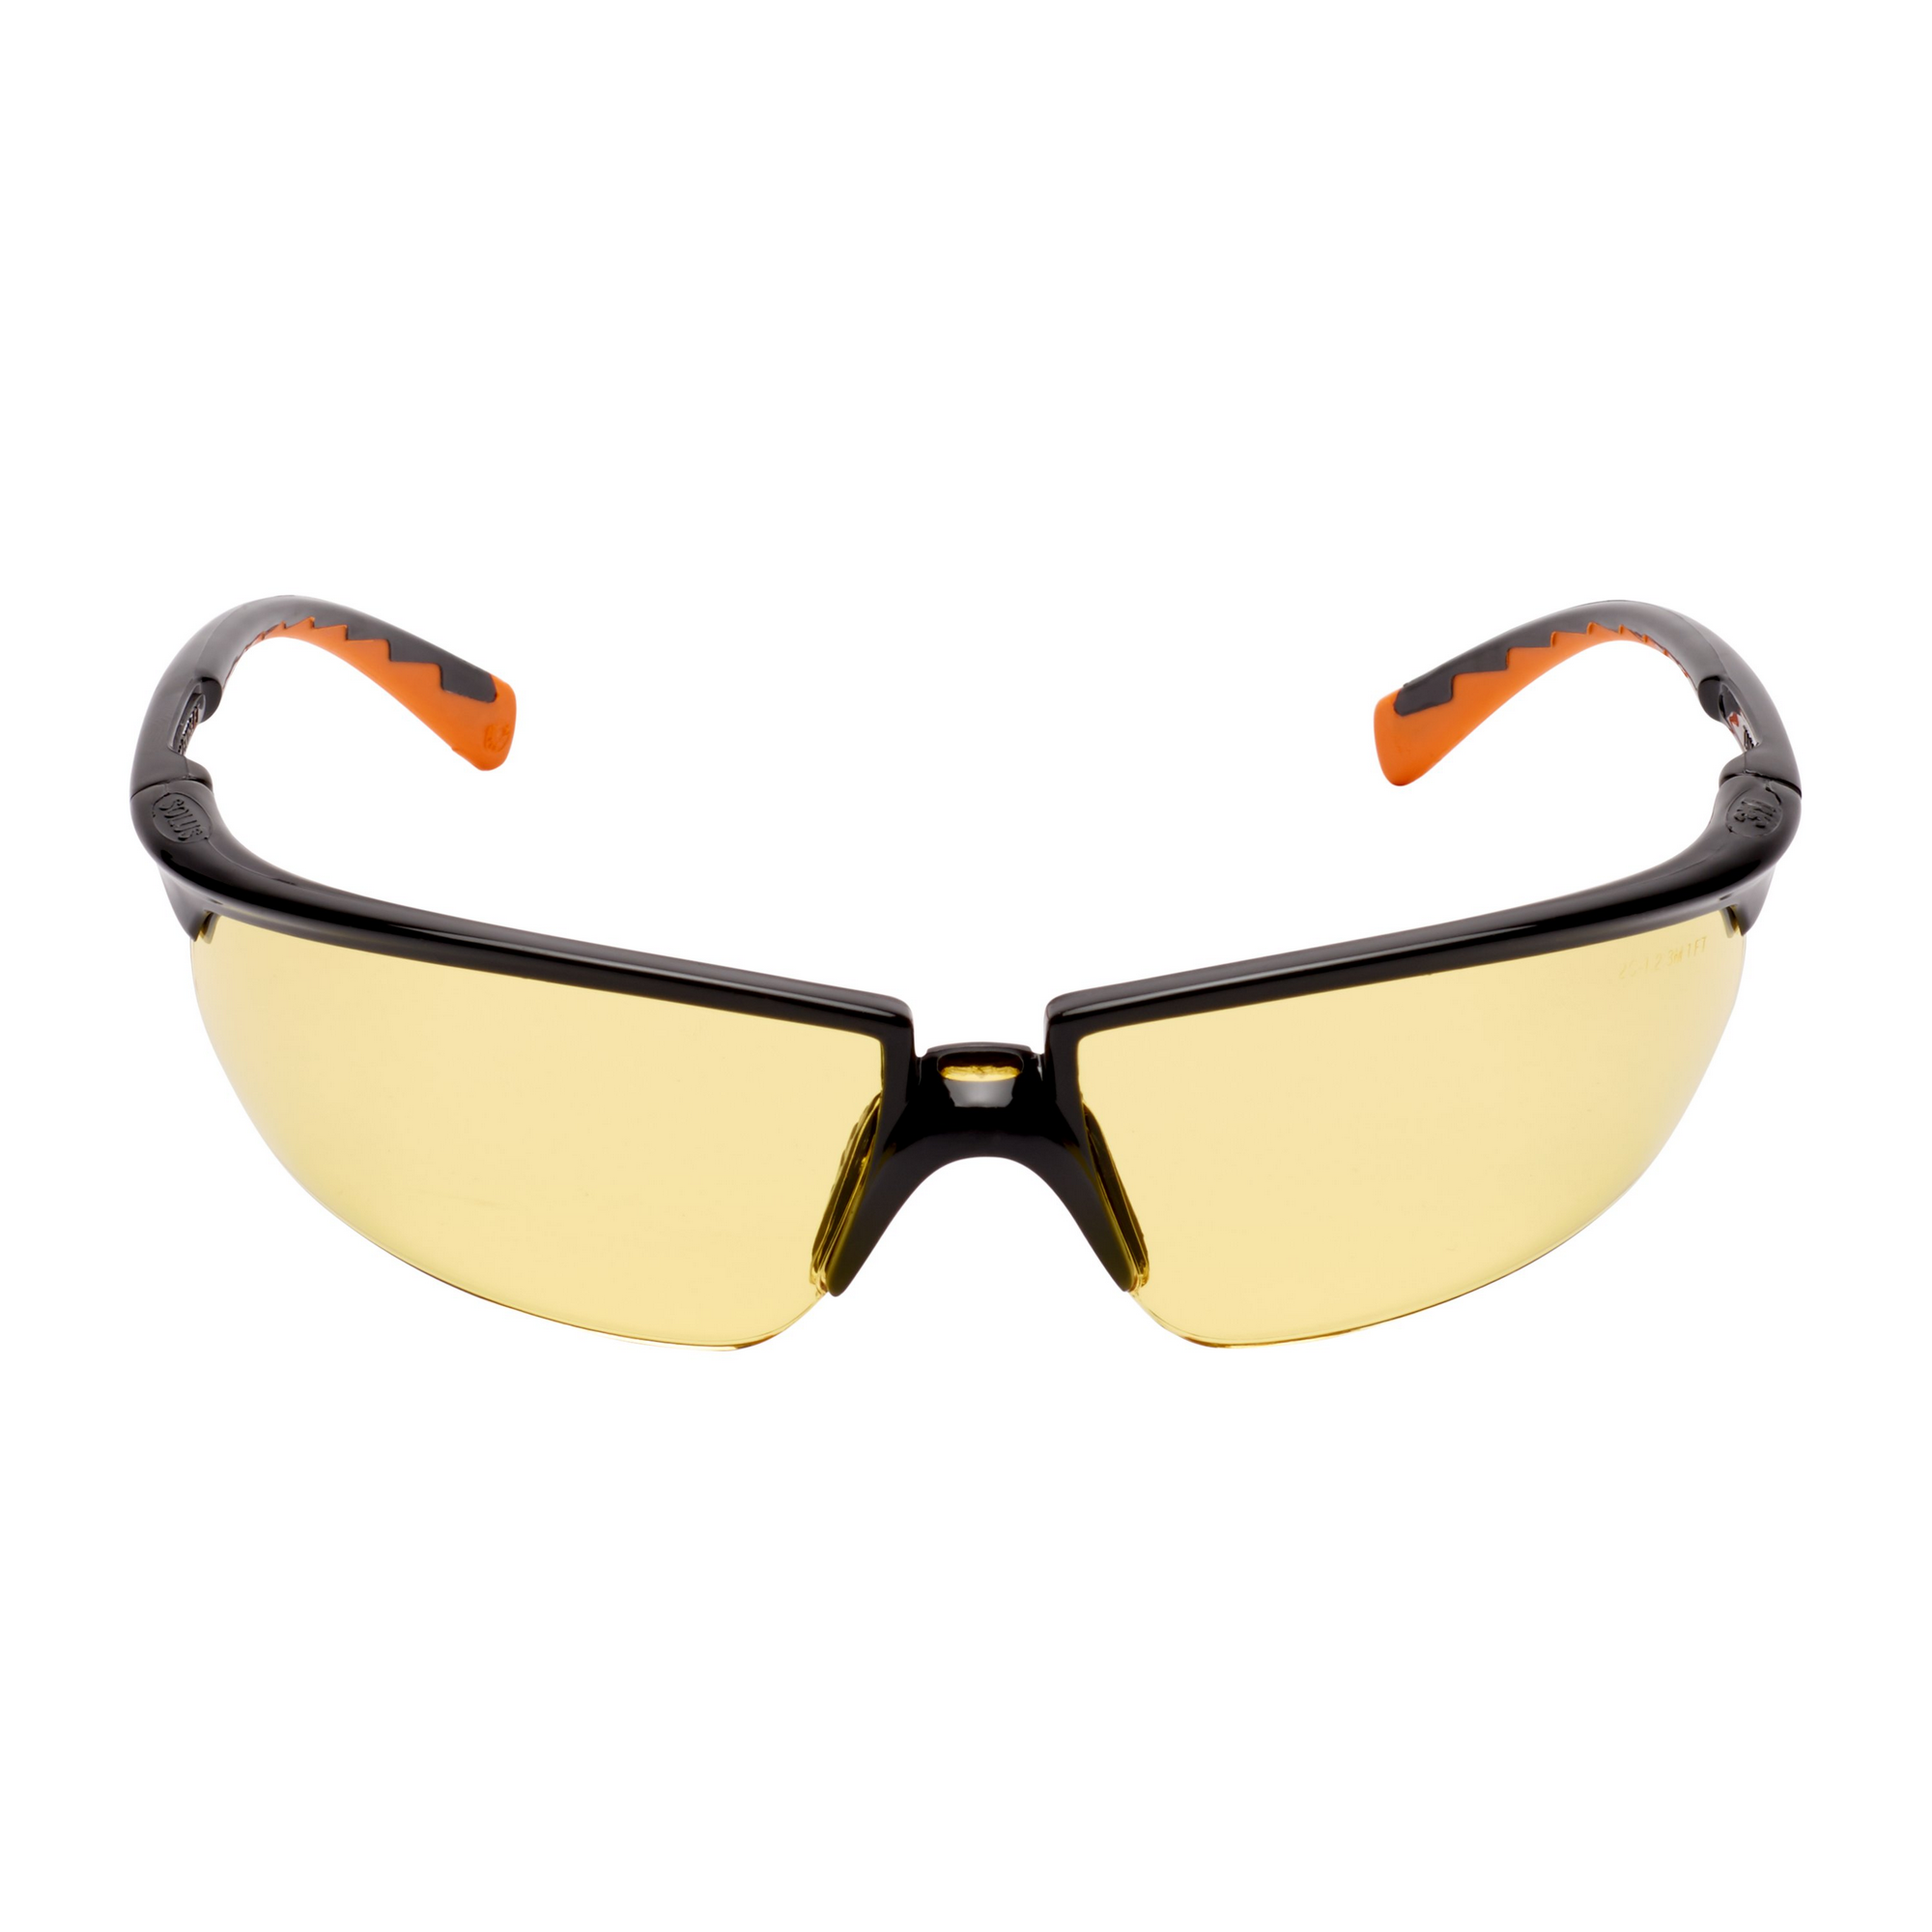 Schutzbrille schwarz/gelb + product picture